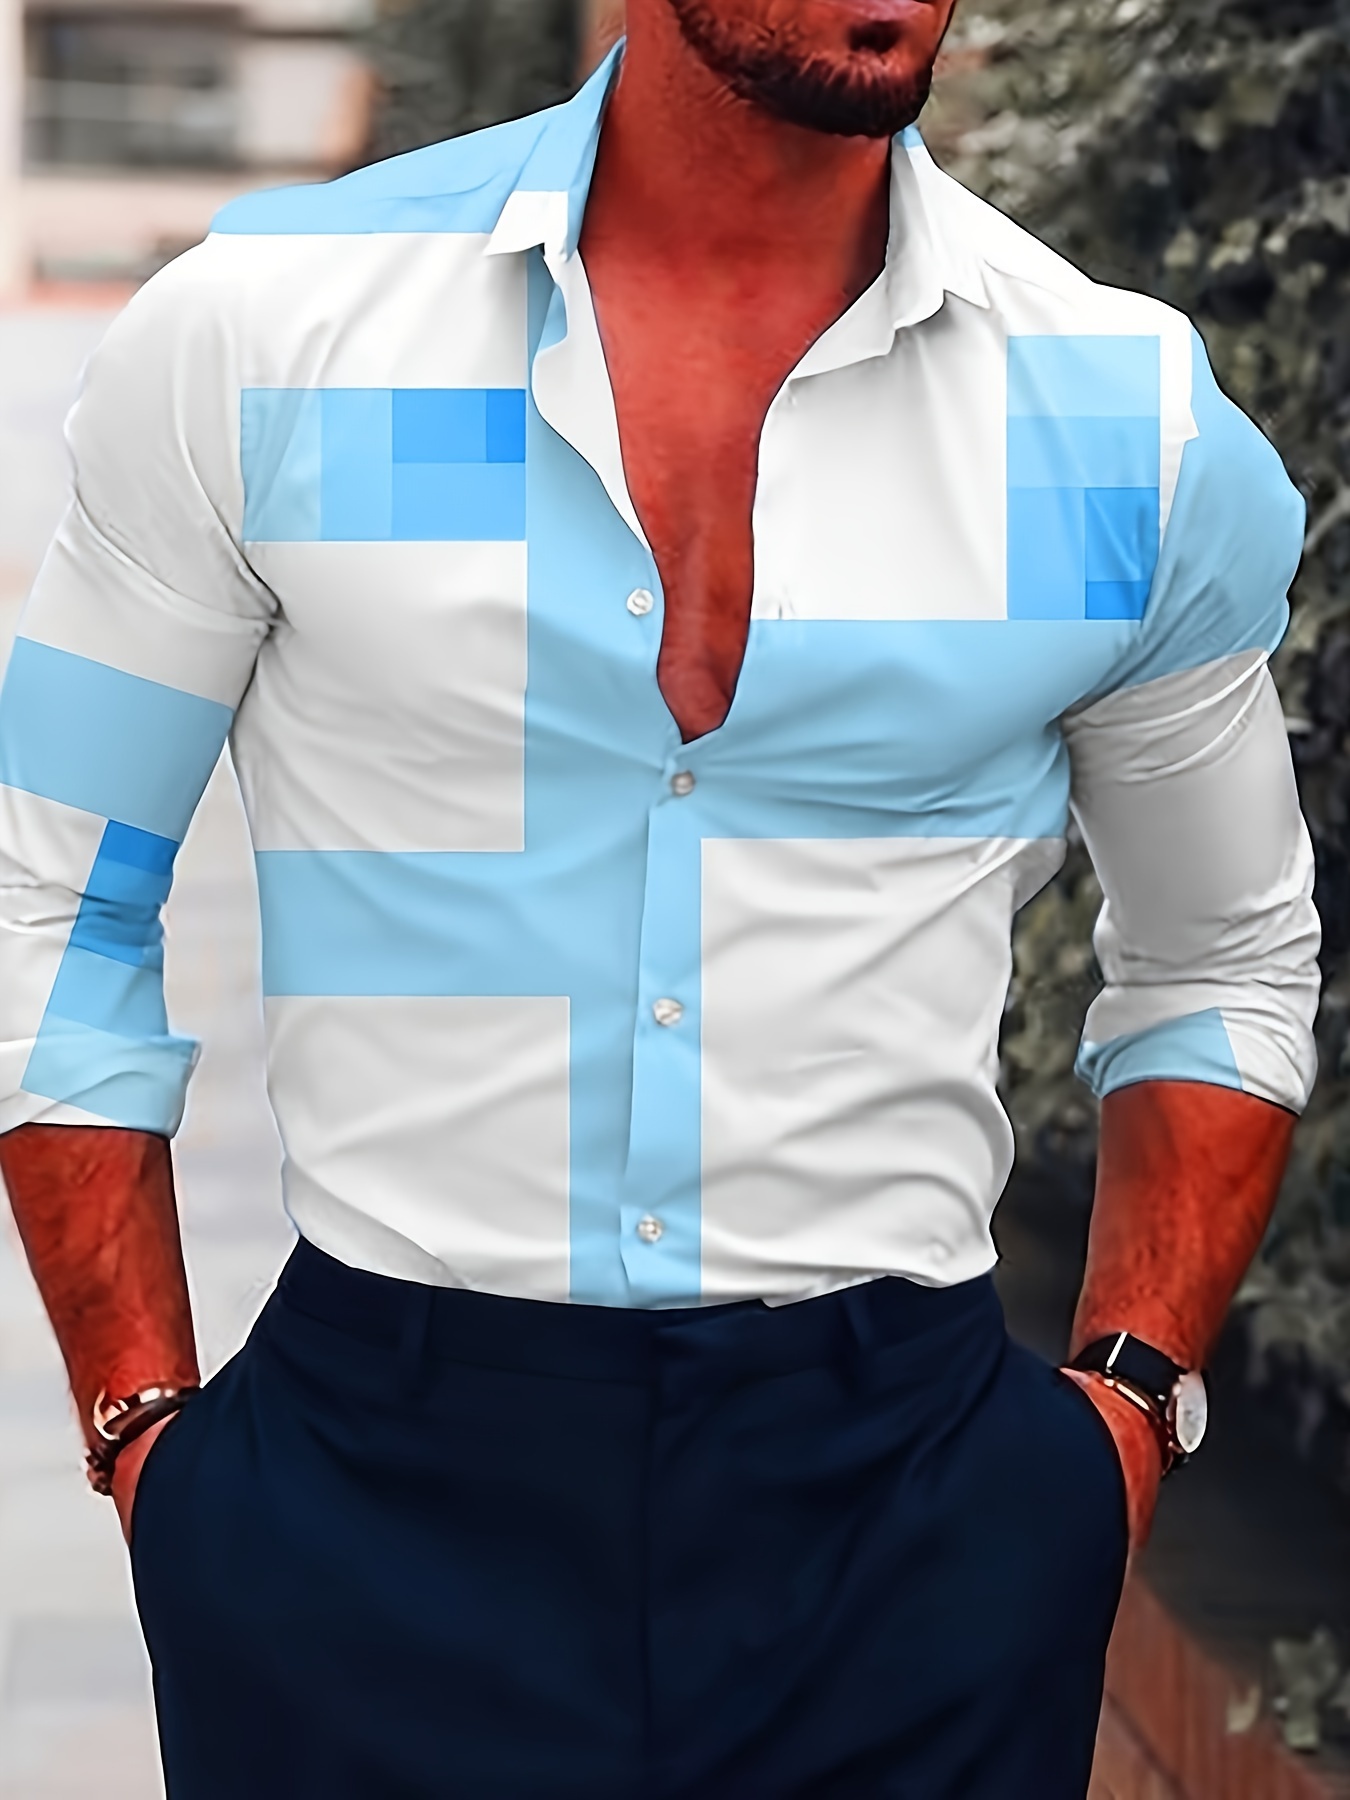  Camisas para hombre, de manga larga, ajustadas, con solapa, con  botones, elegante, lisa, ligera, blusa, Blanco : Deportes y Actividades al  Aire Libre